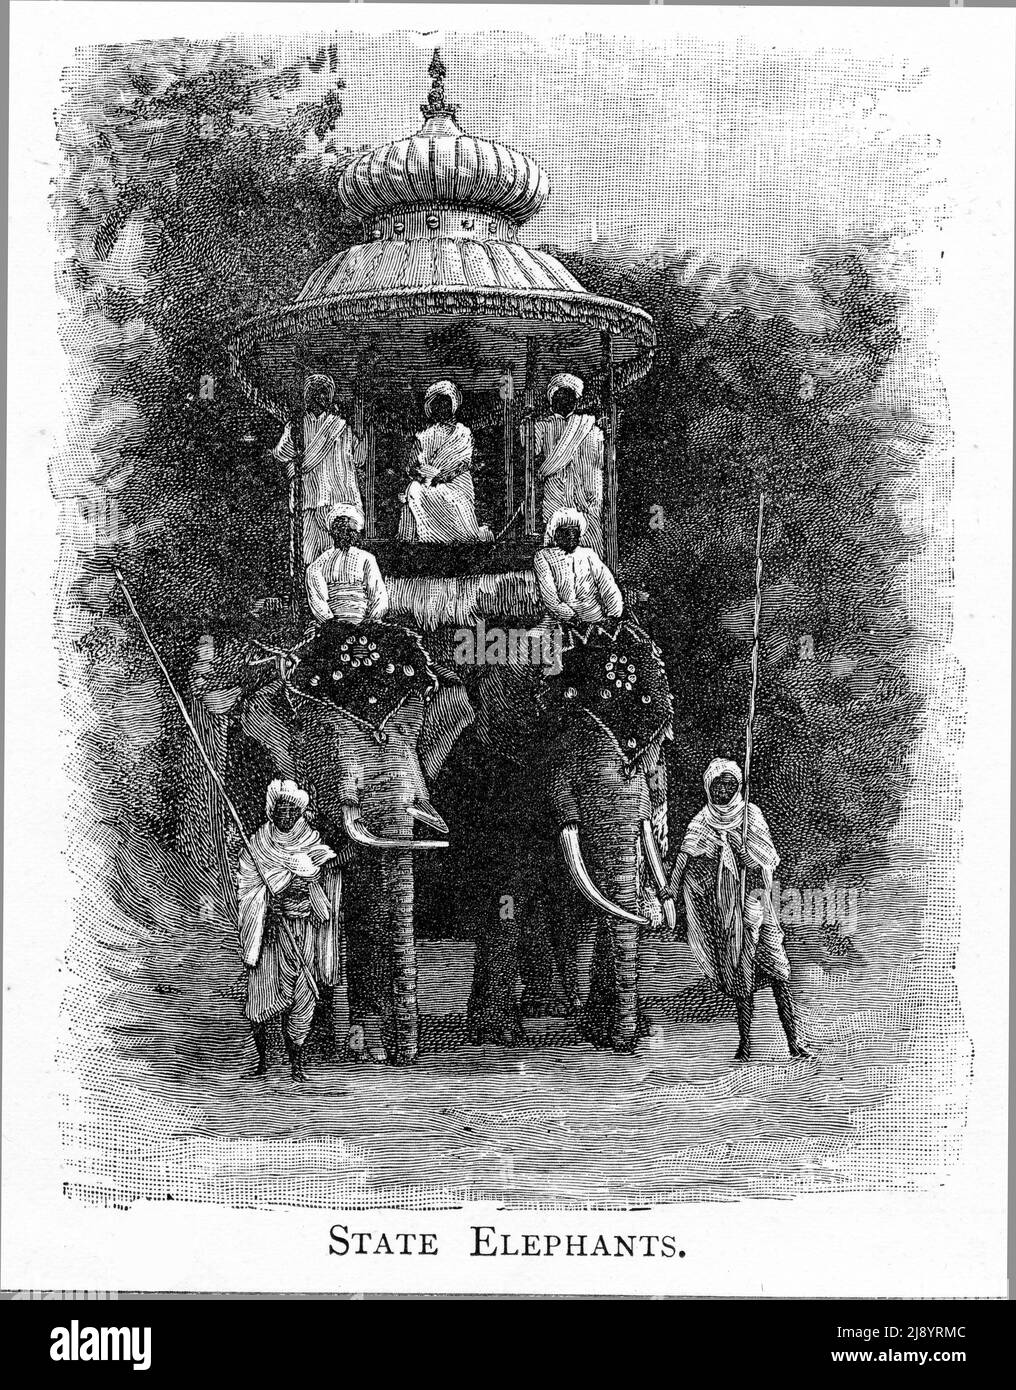 Gravur von Staatselefanten in Indien, um 1880 Stockfoto